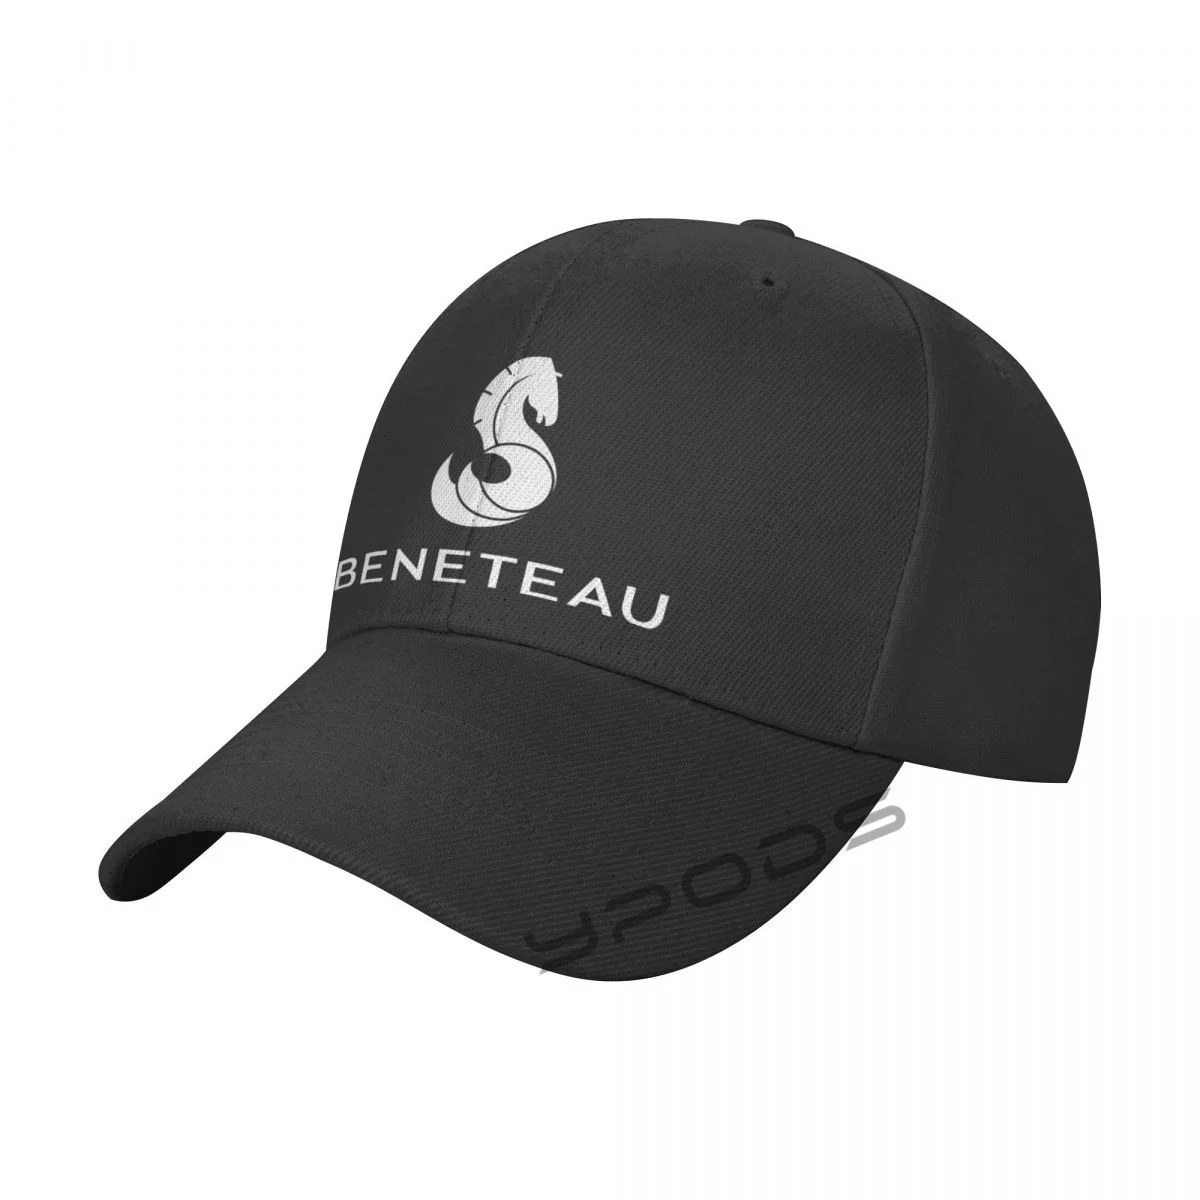 

Men's Baseball Caps Beneteau Aftermarket Women Summer Snapback Cap Adjustable Outdoor Sport Sun Hat